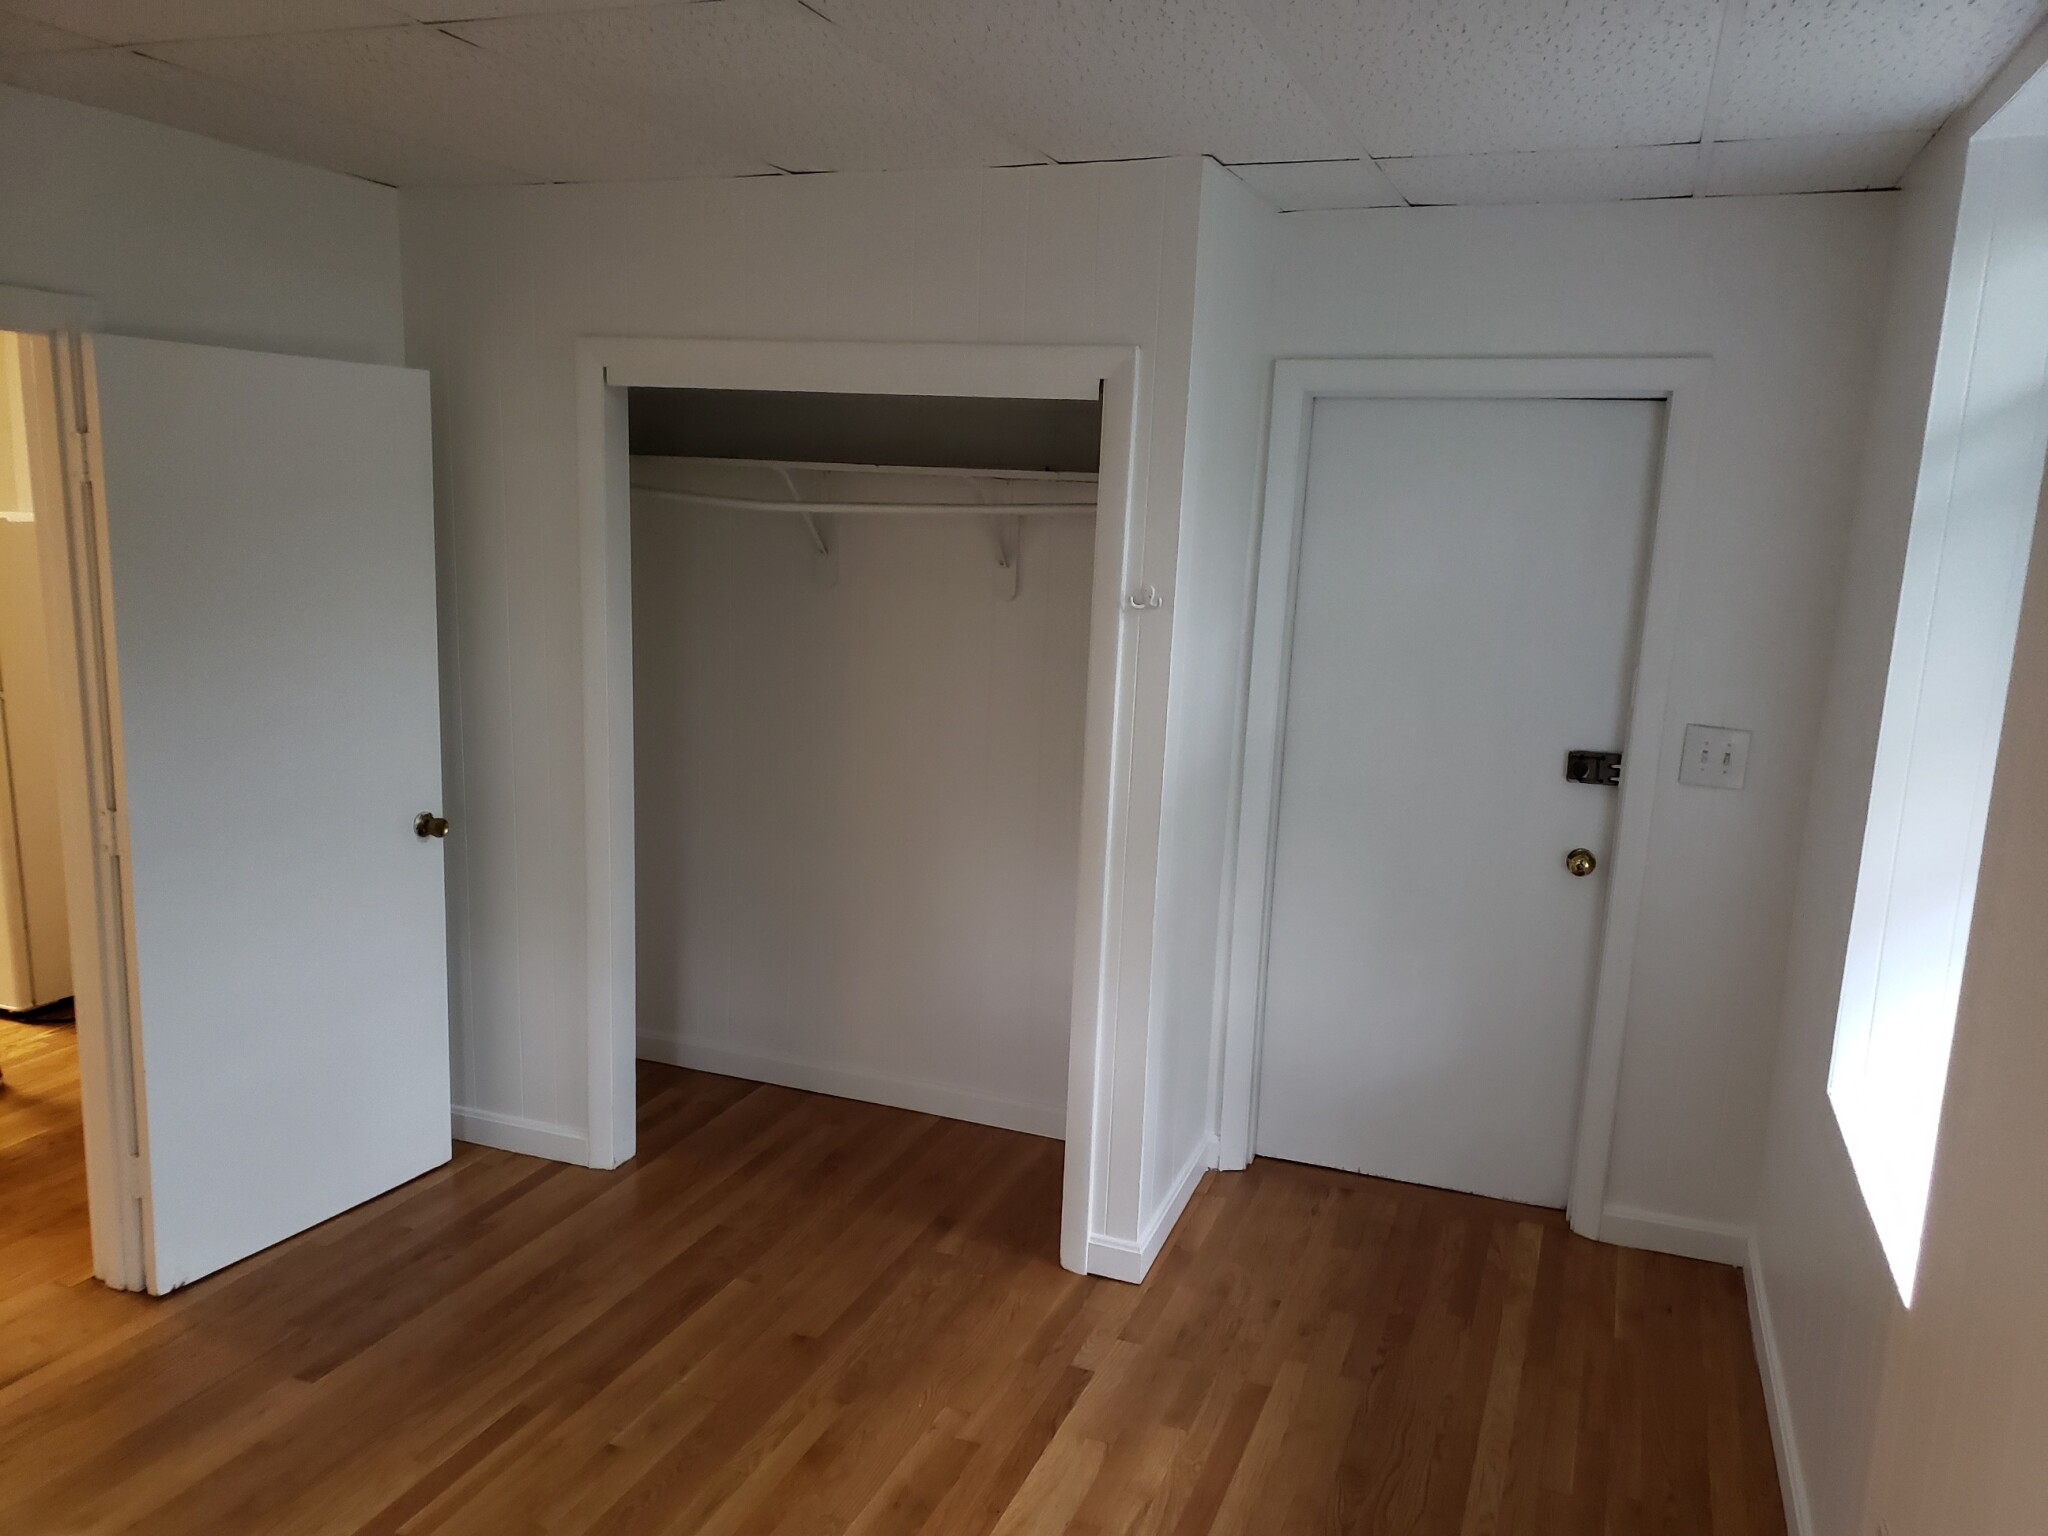 Photos of apartment on Strathmore,Boston MA 02135